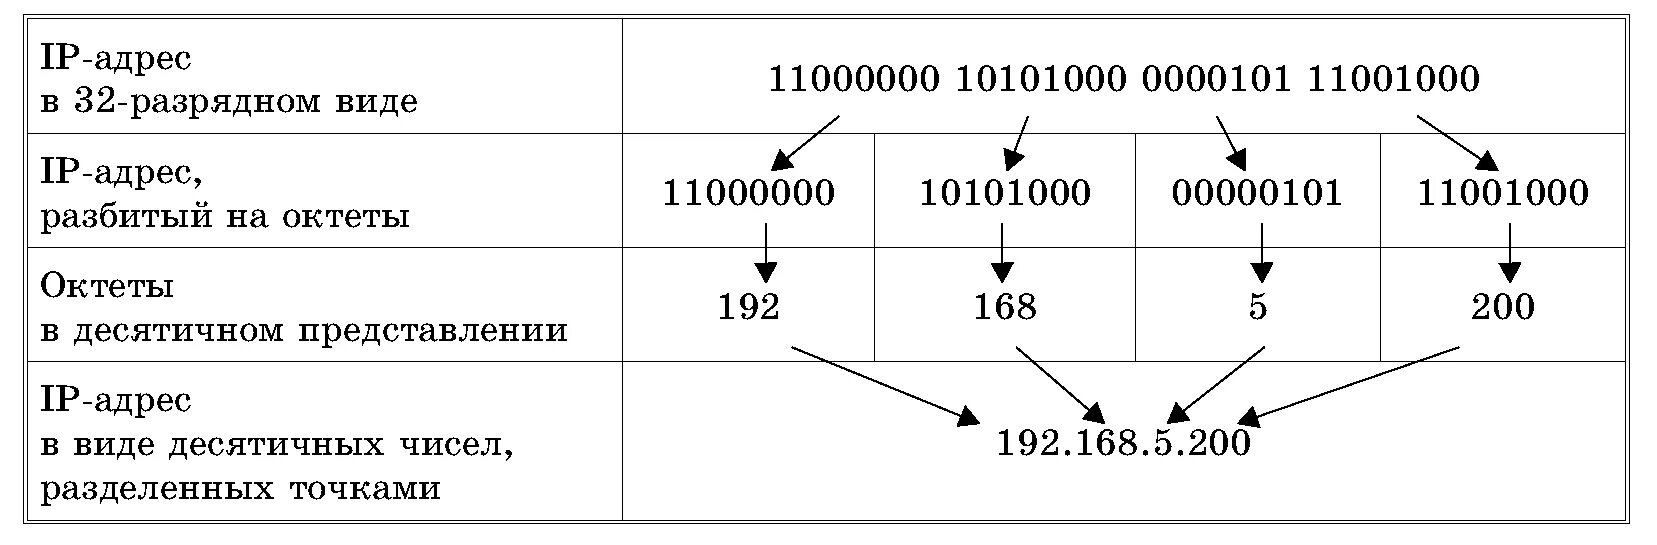 Структура IP адреса. Как записывается IP-адрес компьютера?. Из чего состоит IP адресации. Из чего состоит IP адрес компьютера.